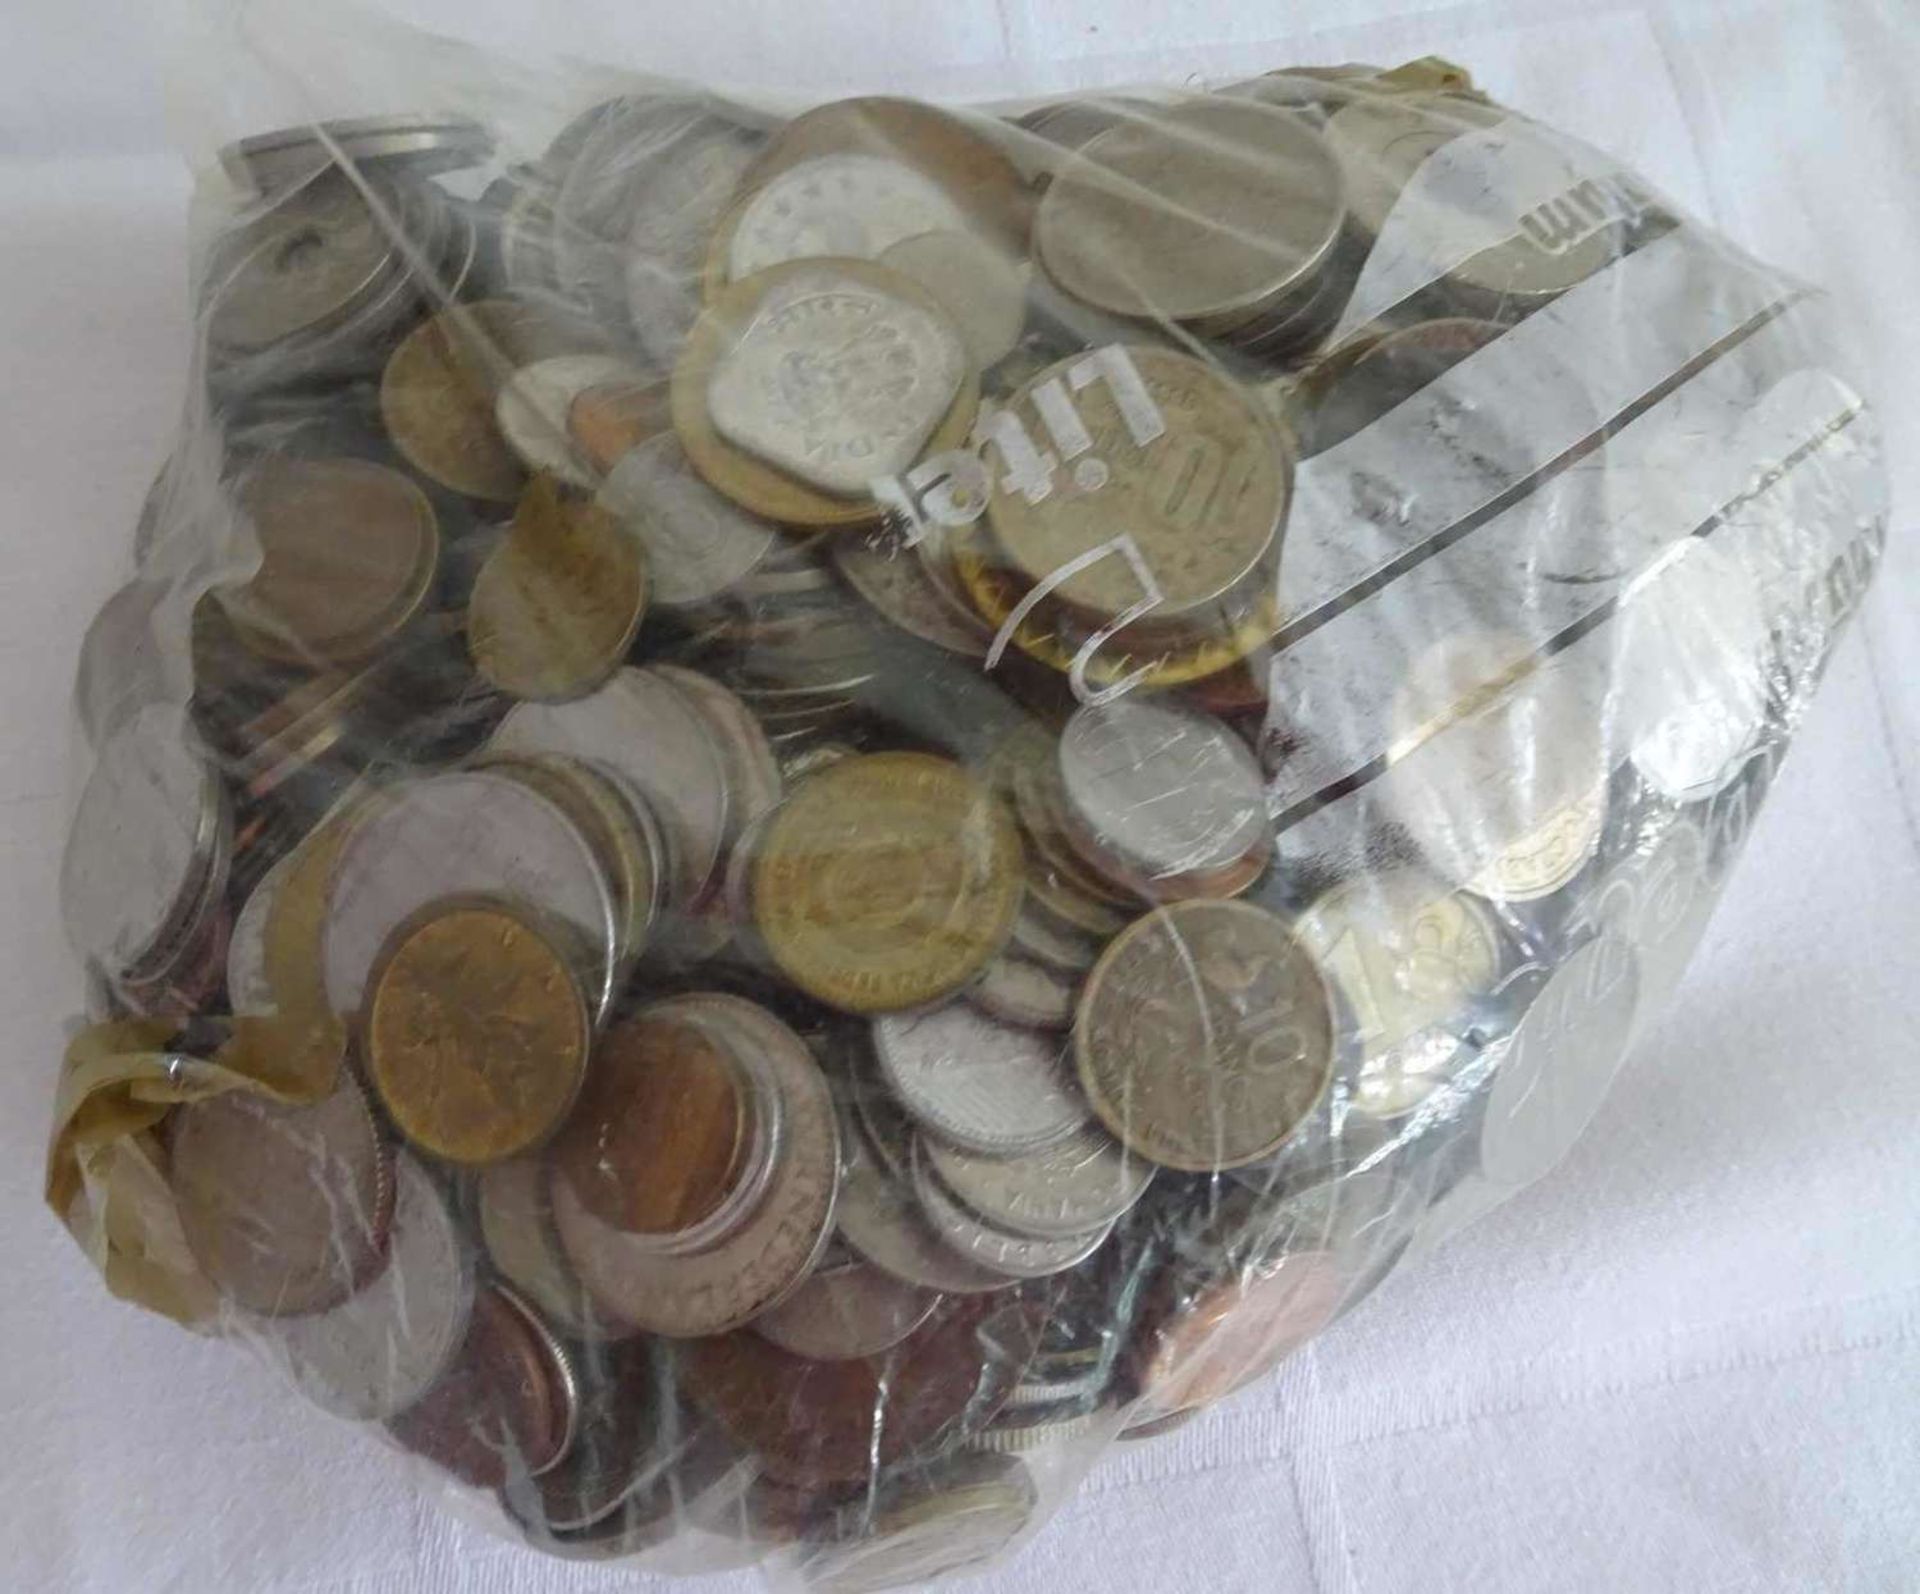 Lot Münzen aus Haushaltsauflösung, alle Welt, undurchsuchte Fundgrube, Gewicht ca. 2,9 kg. Lot of